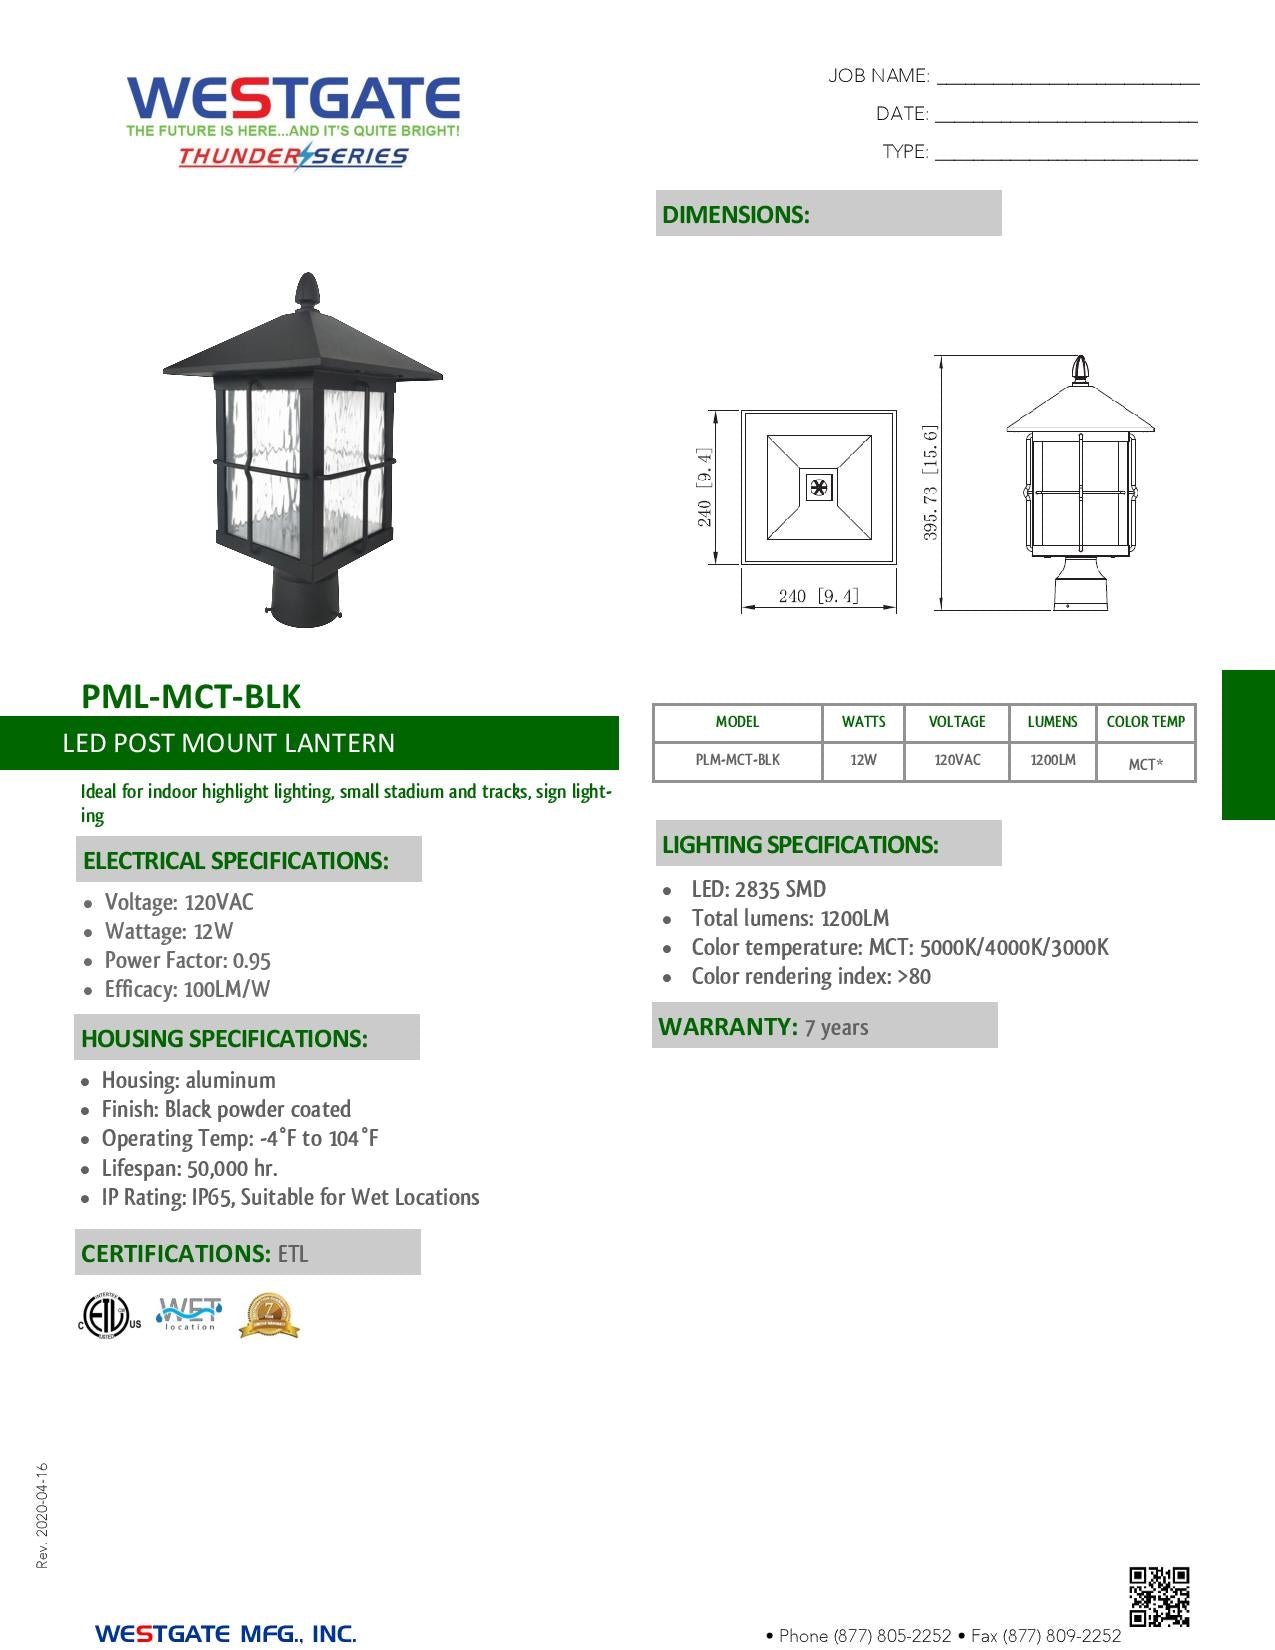 LED Multi-CCT Post Mount Lantern - WESTGATE